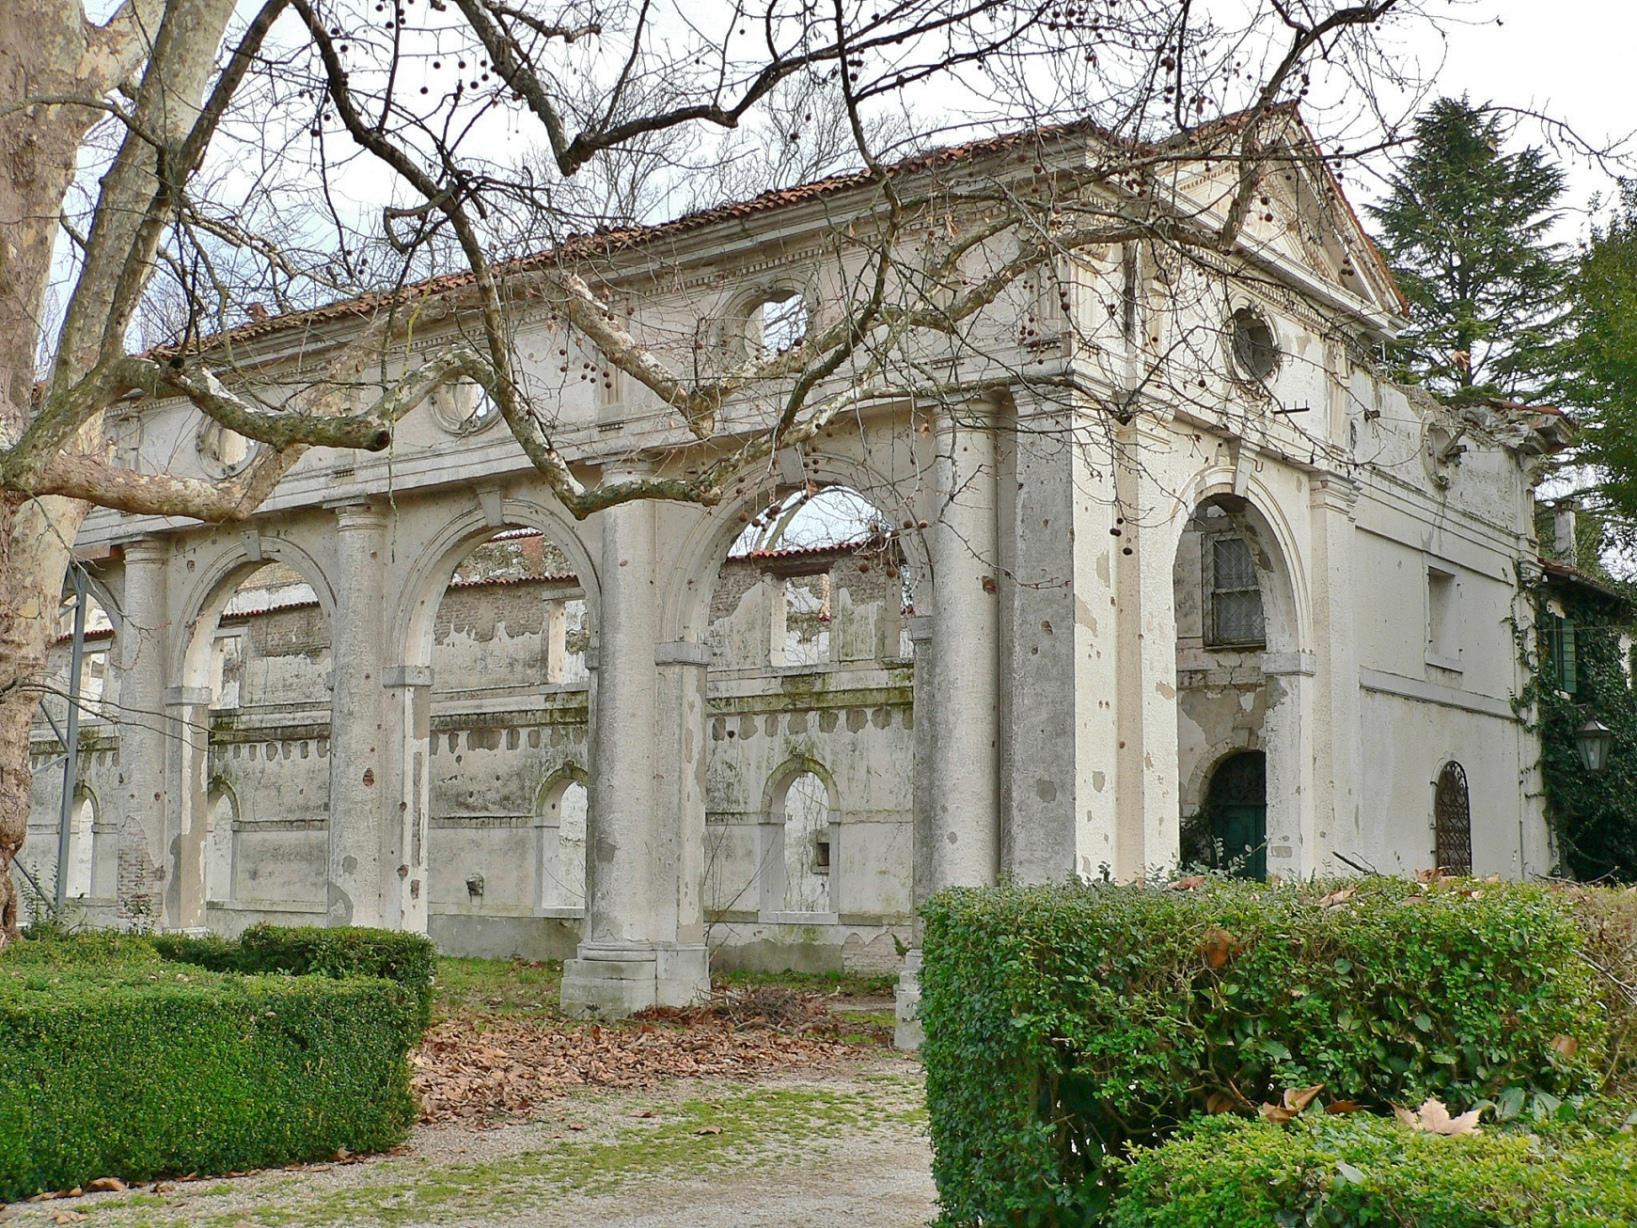 San Michele al Tagliamento (VE), Villa Biaggini Ivancich